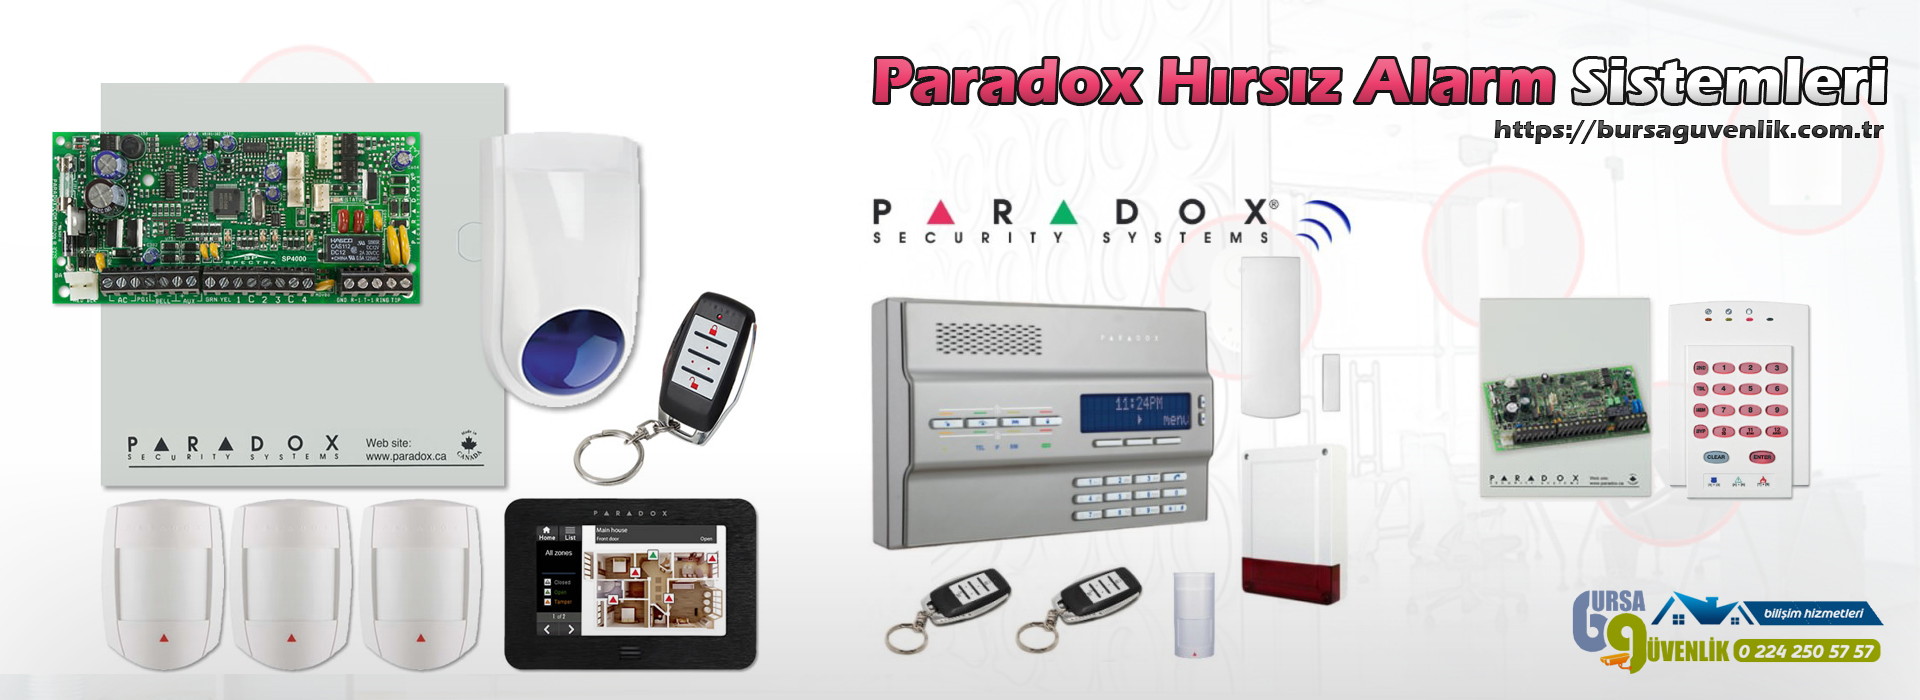 Paradox Hırsız Alarm Sistemi